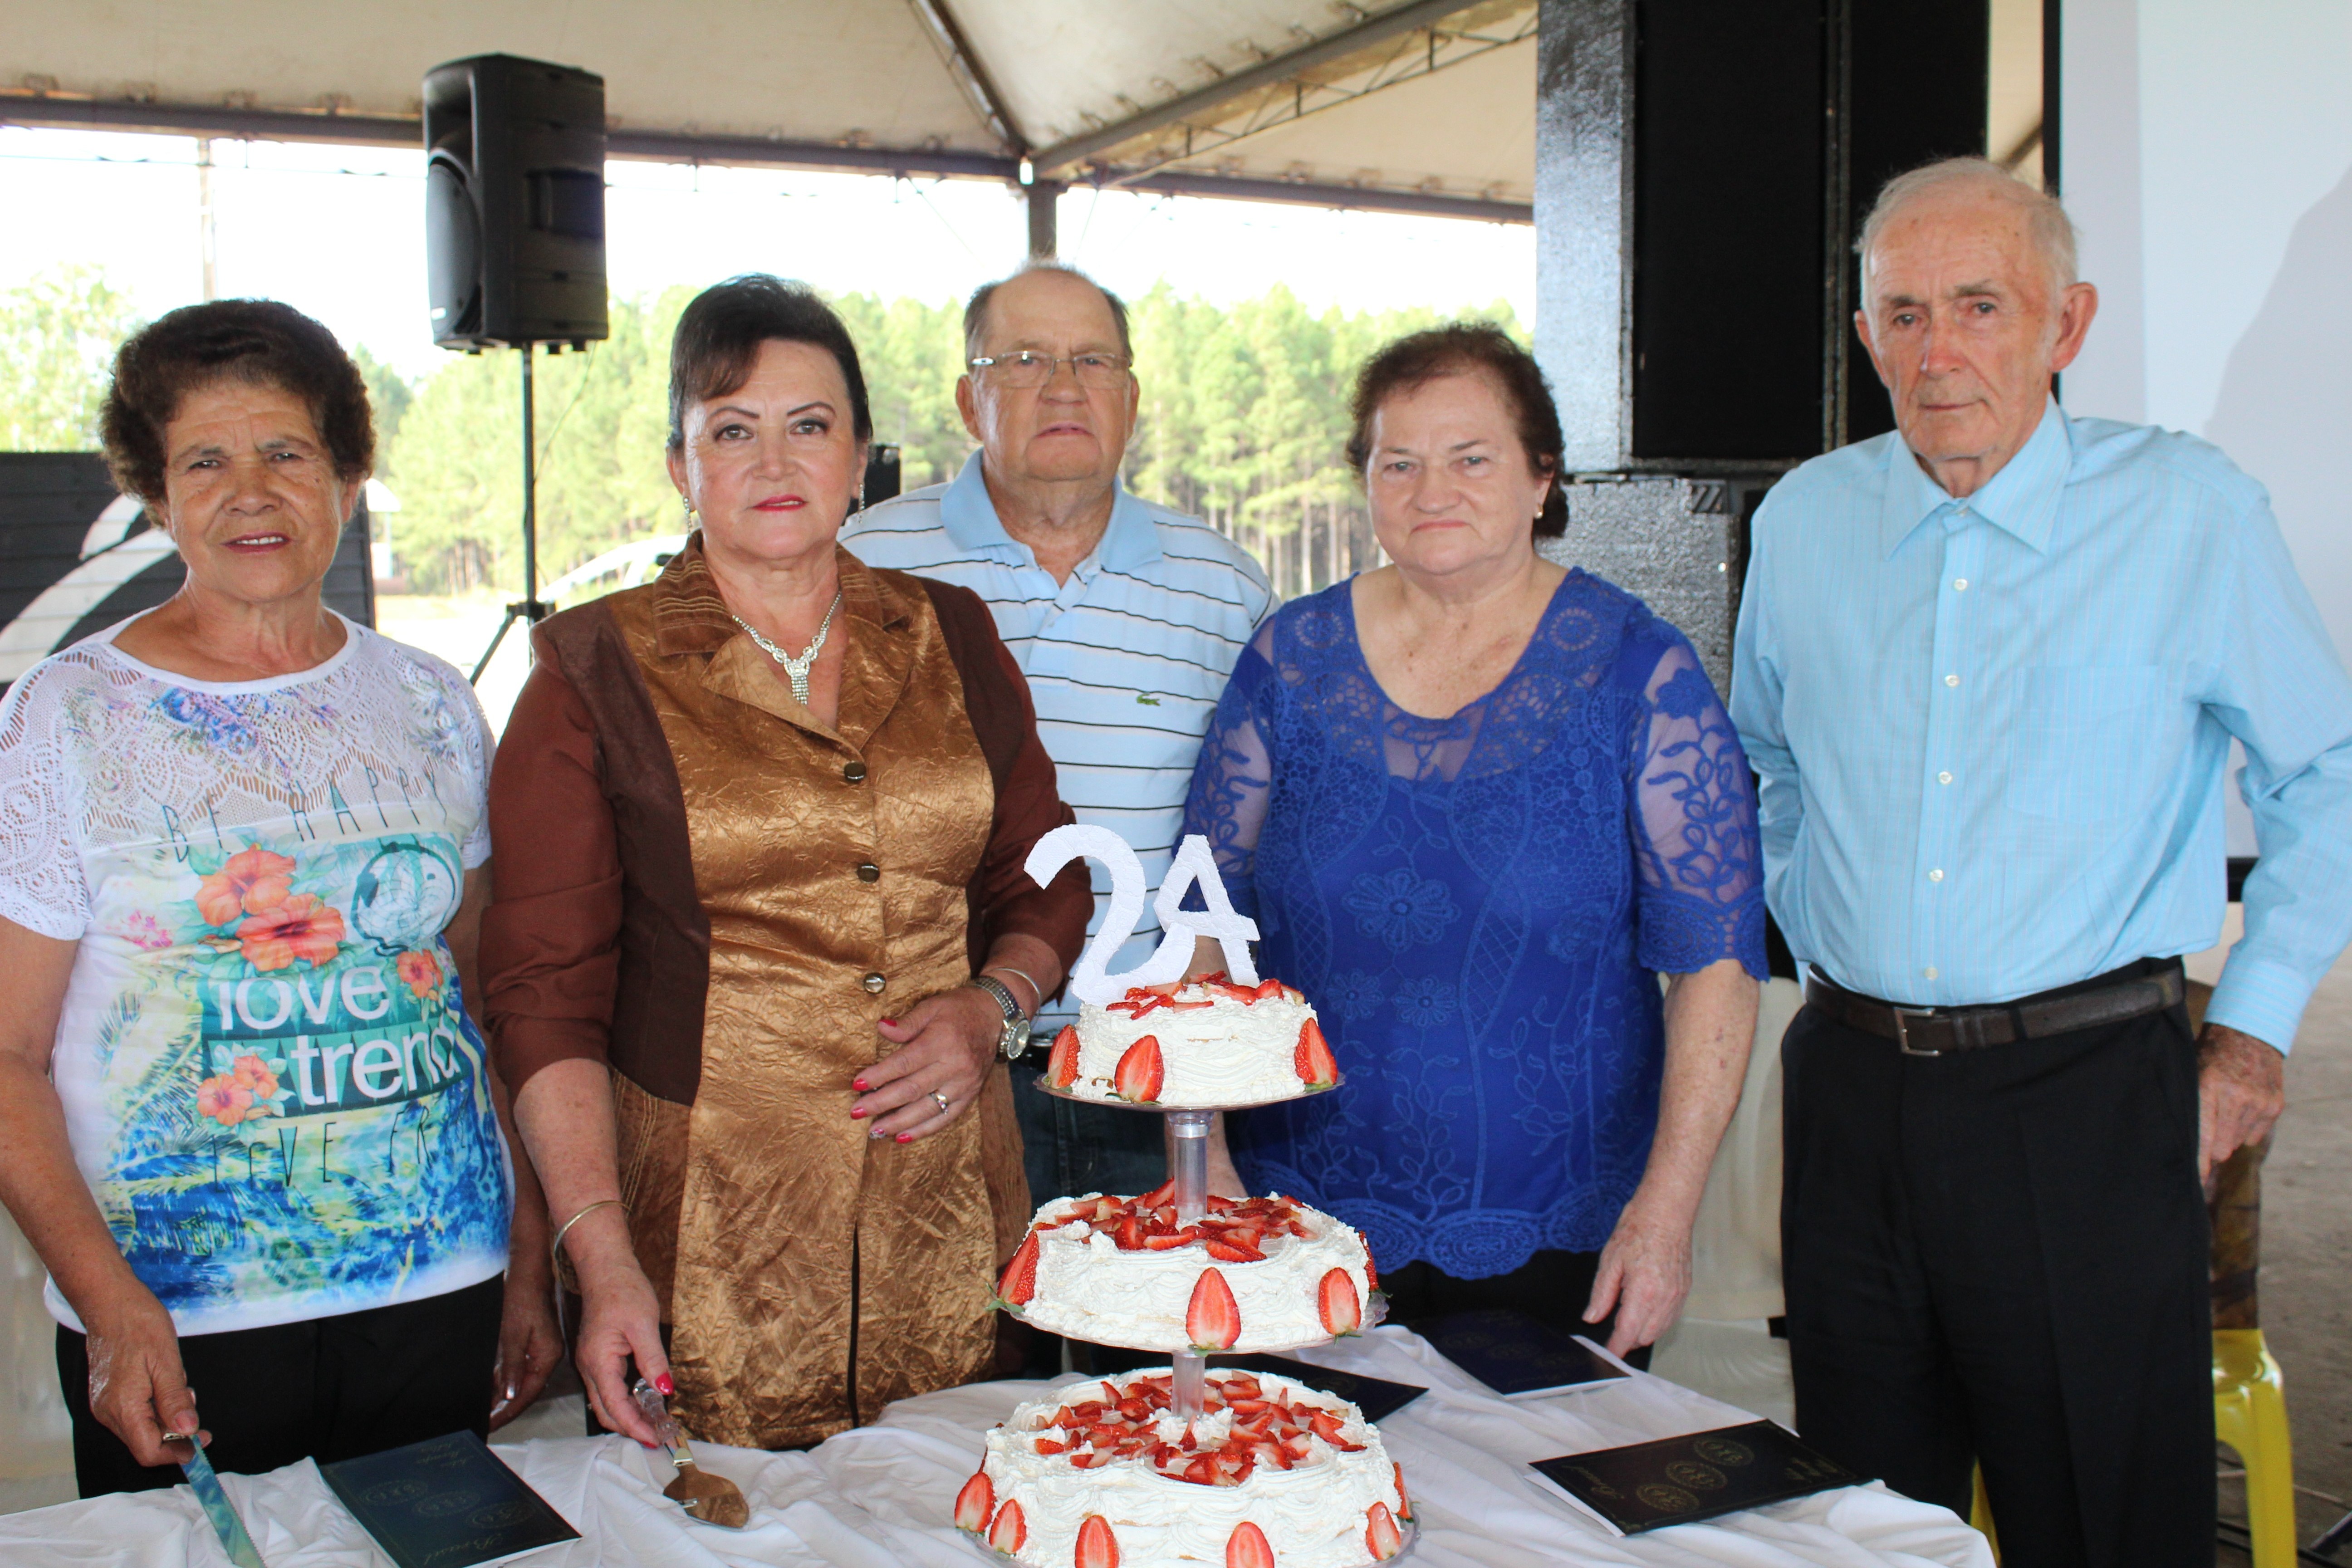 São-cristovenses homenageados com selo postal fizeram o corte oficial do bolo festivo